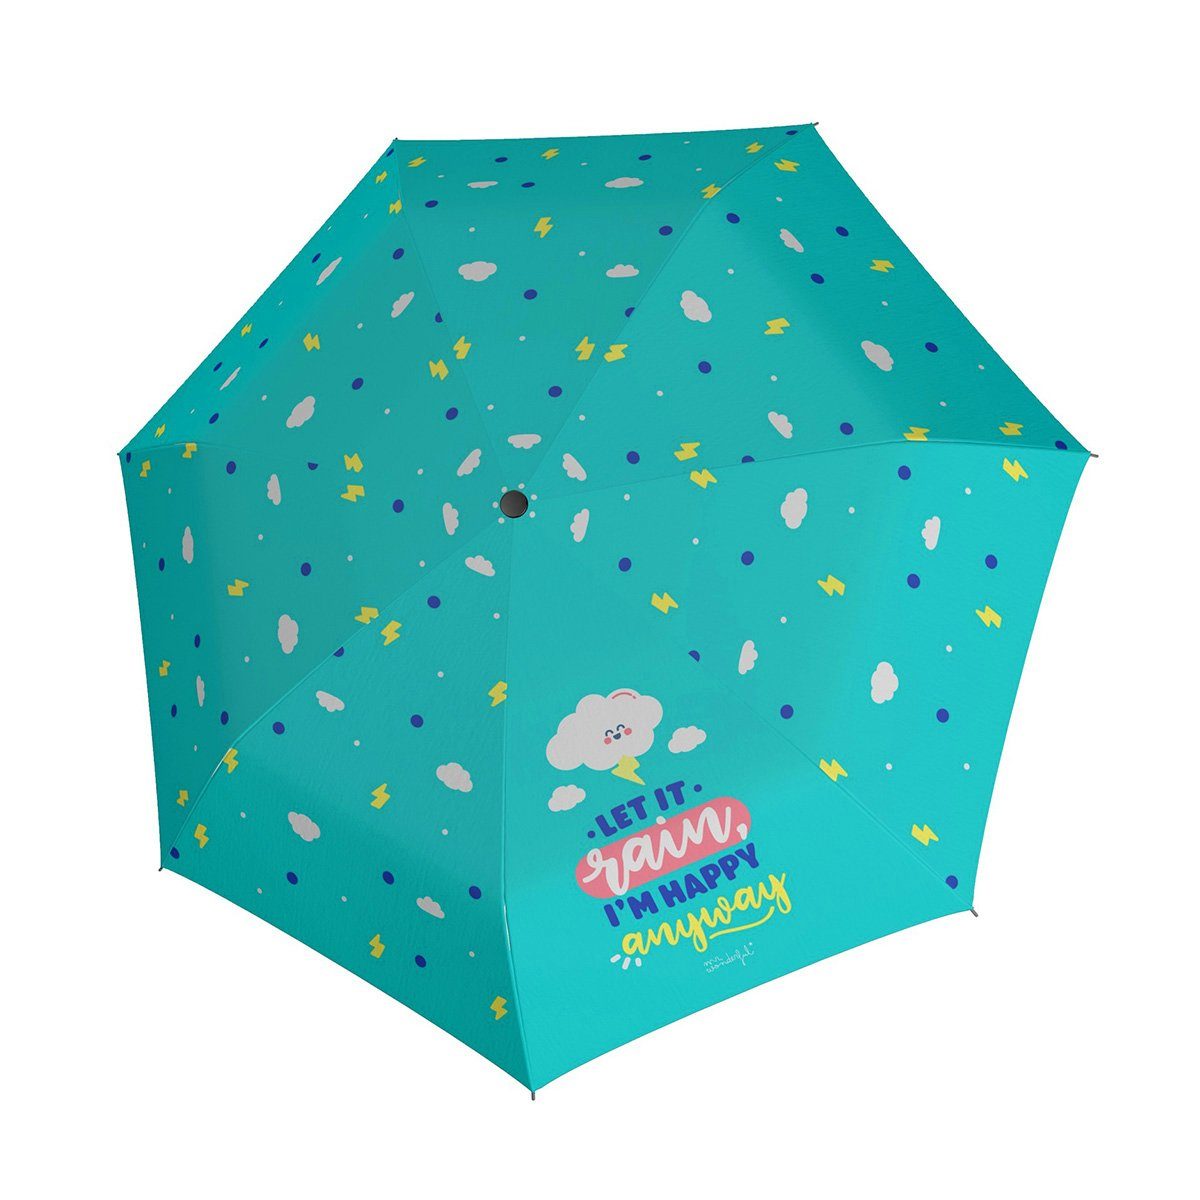 Schultaschenschirm Taschenregenschirm doppler® 2 Modell Mini Happy Regenschirm Kinderschirm Clouds